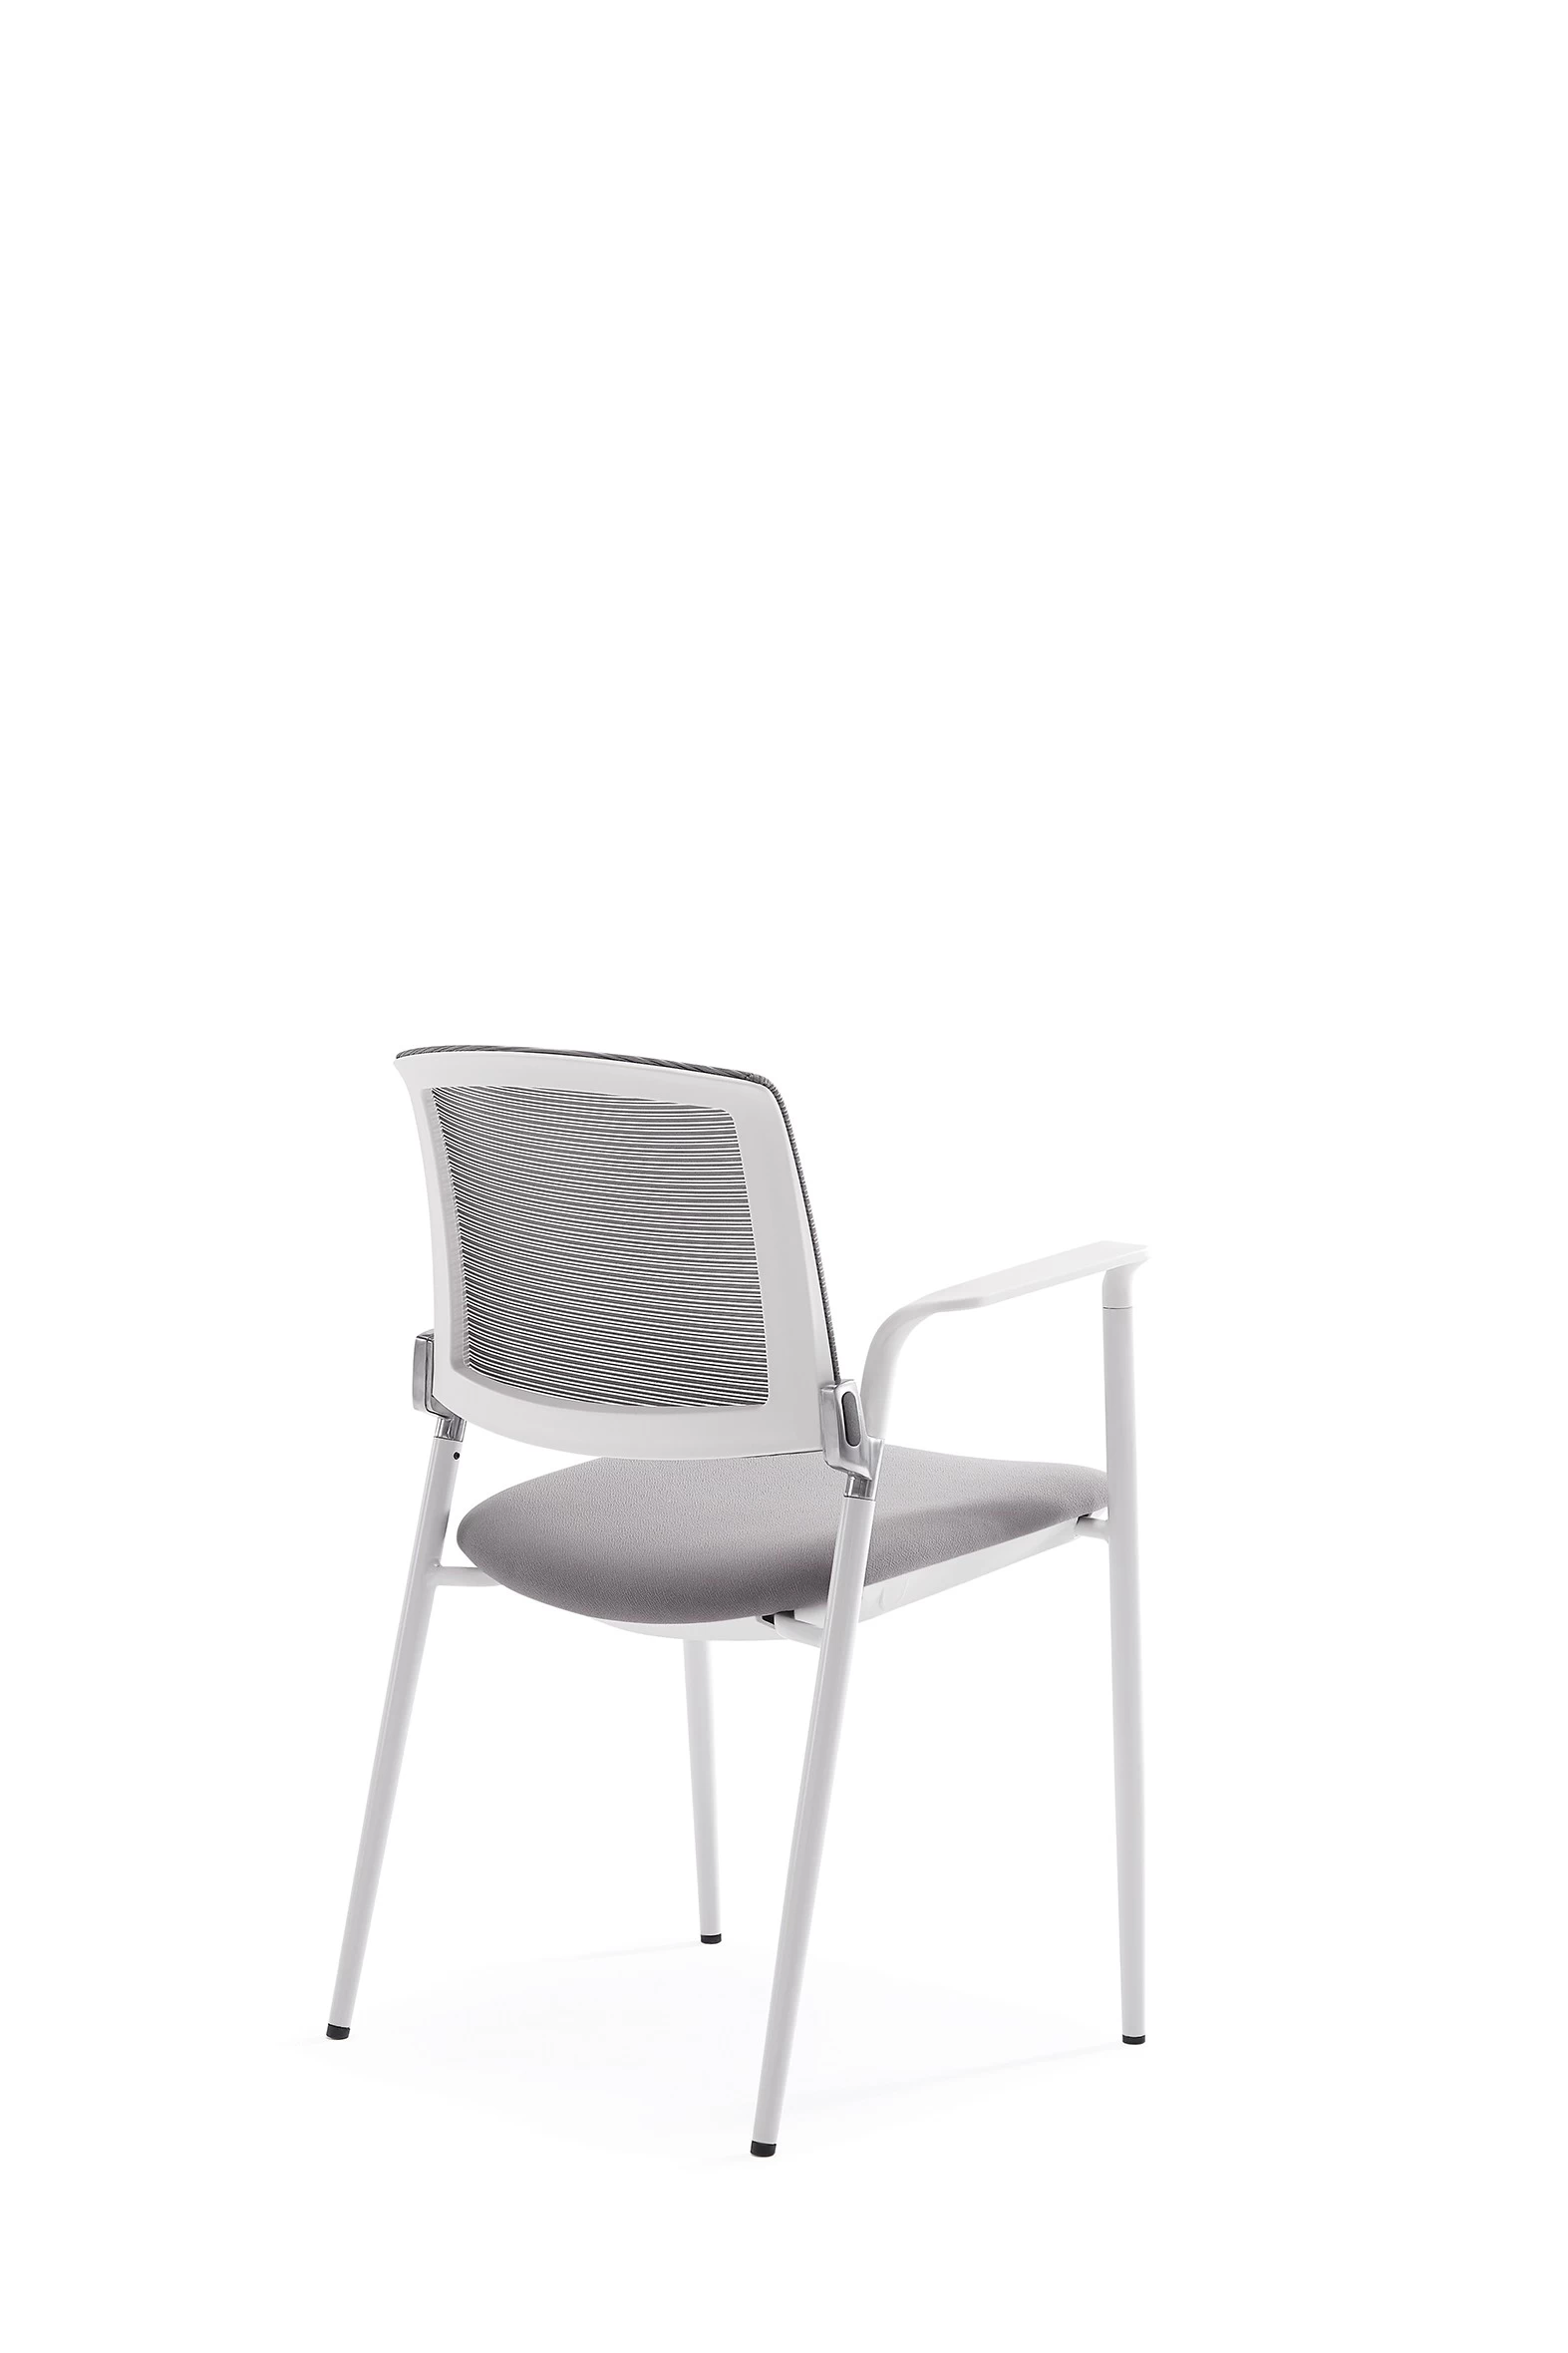 Newcity 1534现代堆叠网格会议训练椅园林家具训练椅现代时尚训练椅优质批发户外椅供应商中国佛山